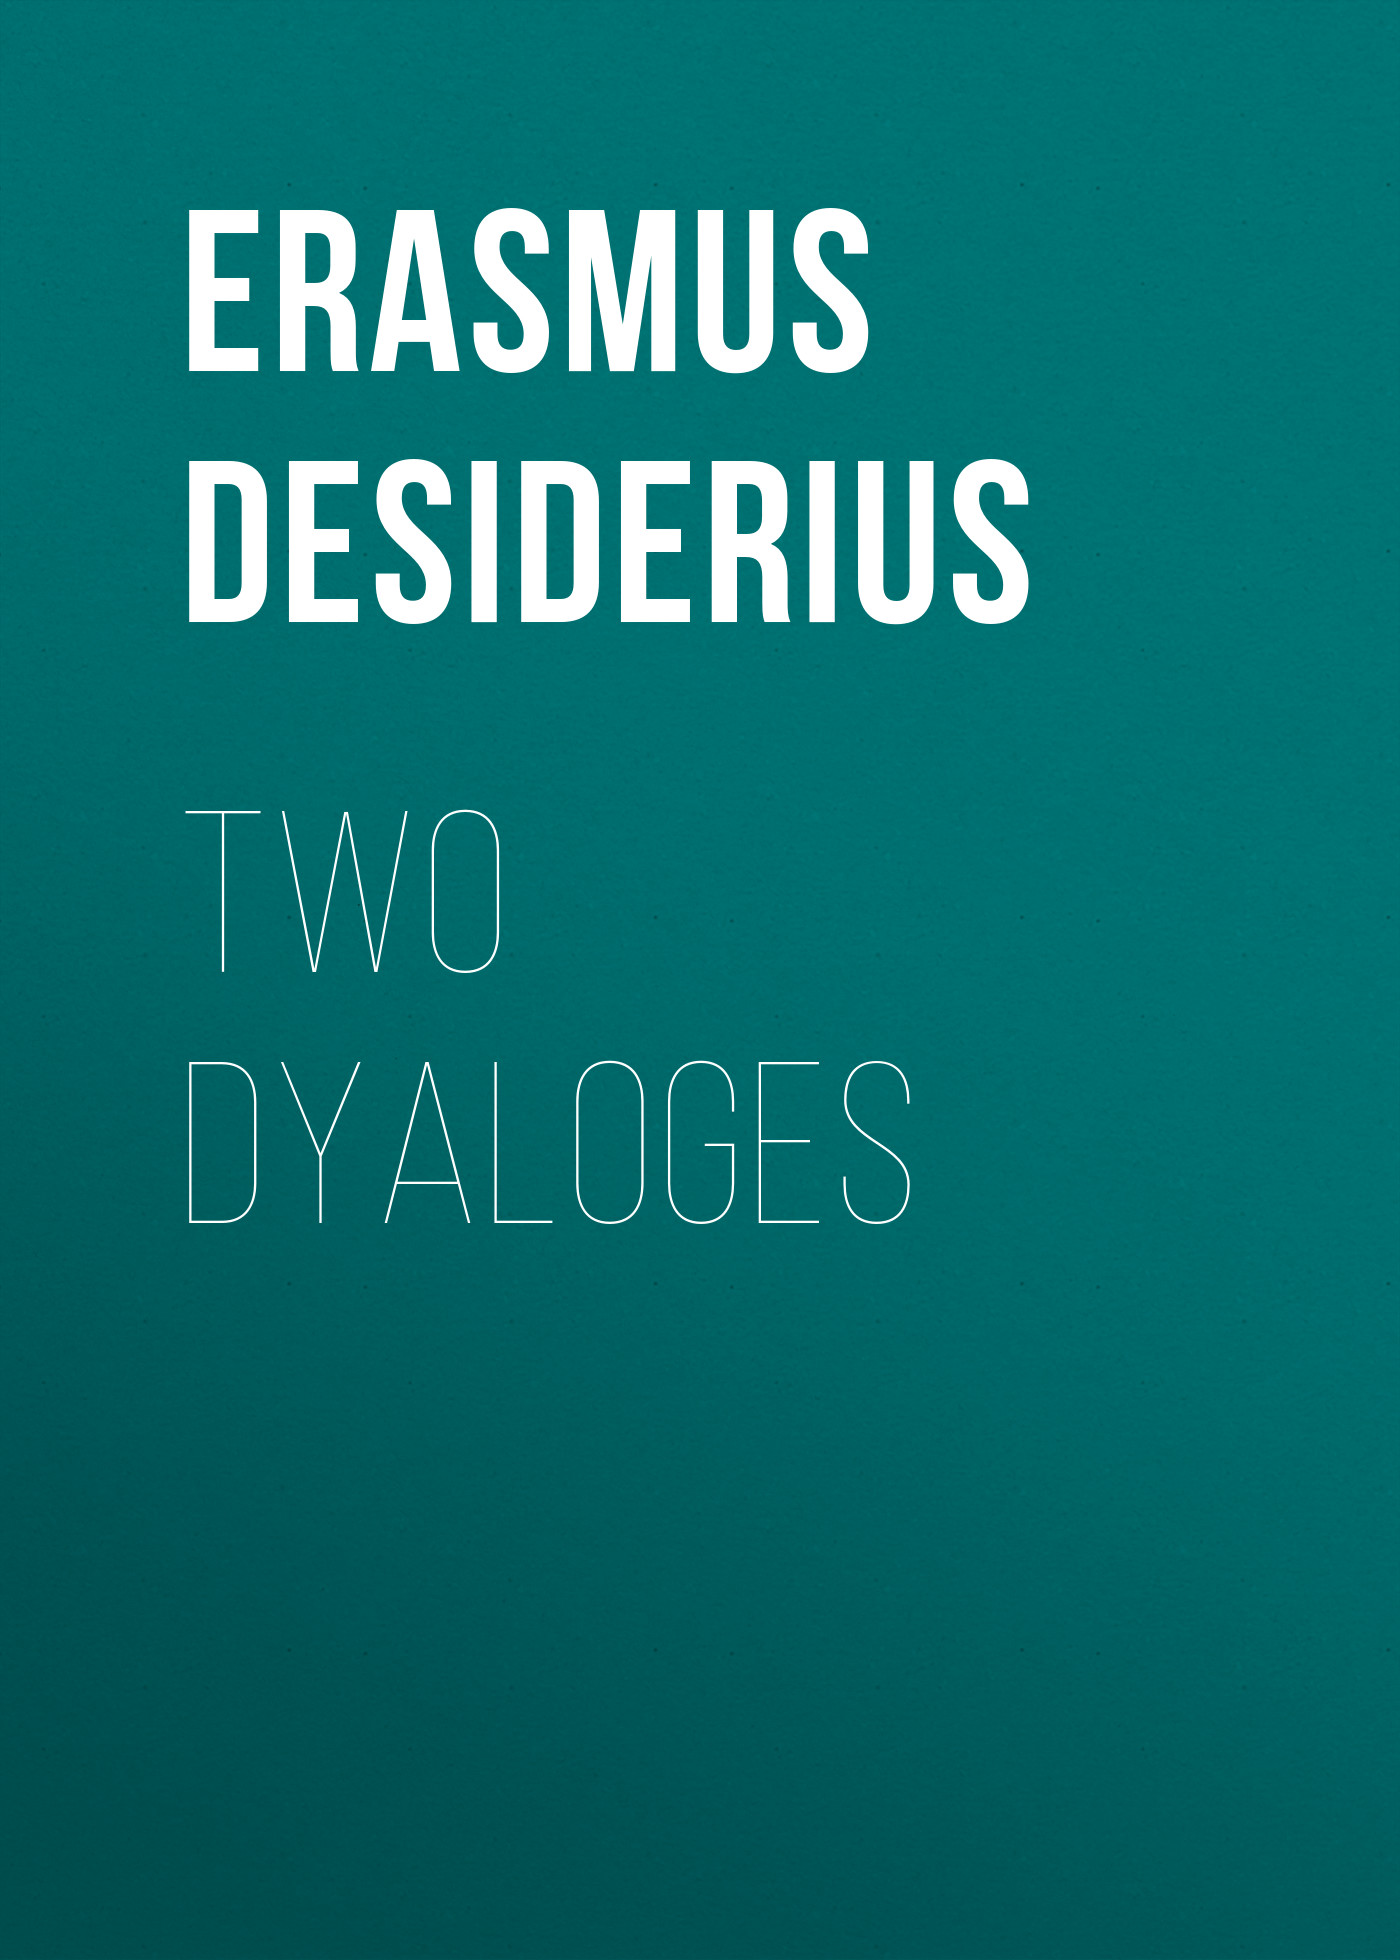 Книга Two Dyaloges из серии , созданная Desiderius Erasmus, может относится к жанру Биографии и Мемуары, Зарубежная старинная литература. Стоимость электронной книги Two Dyaloges с идентификатором 36097381 составляет 0 руб.